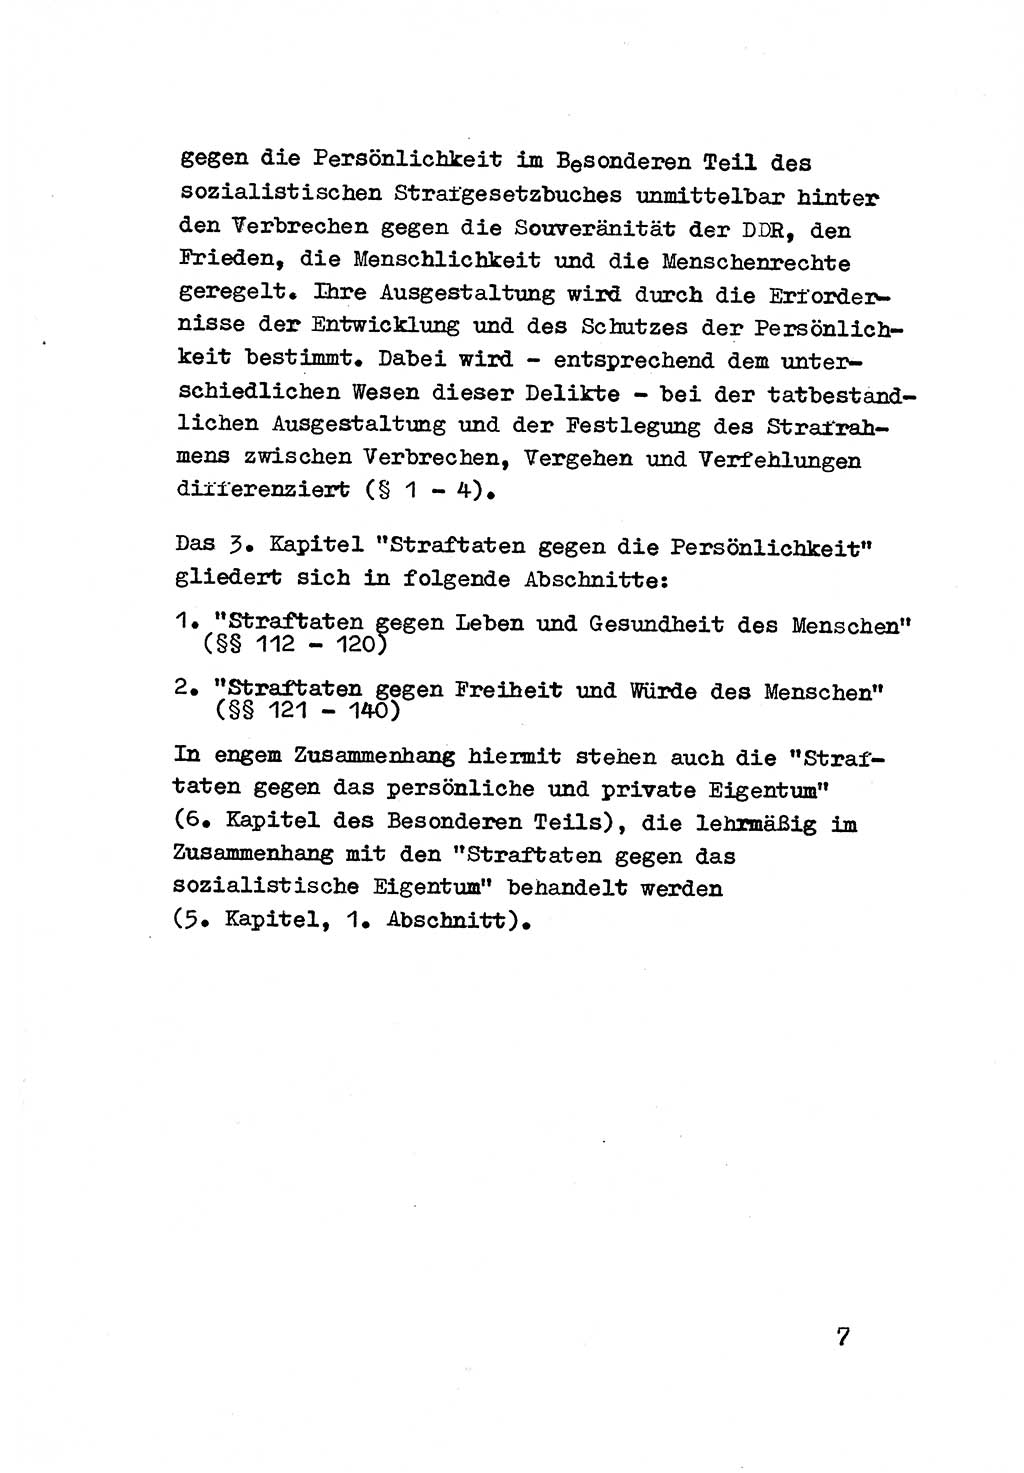 Strafrecht der DDR (Deutsche Demokratische Republik), Besonderer Teil, Lehrmaterial, Heft 3 1969, Seite 7 (Strafr. DDR BT Lehrmat. H. 3 1969, S. 7)